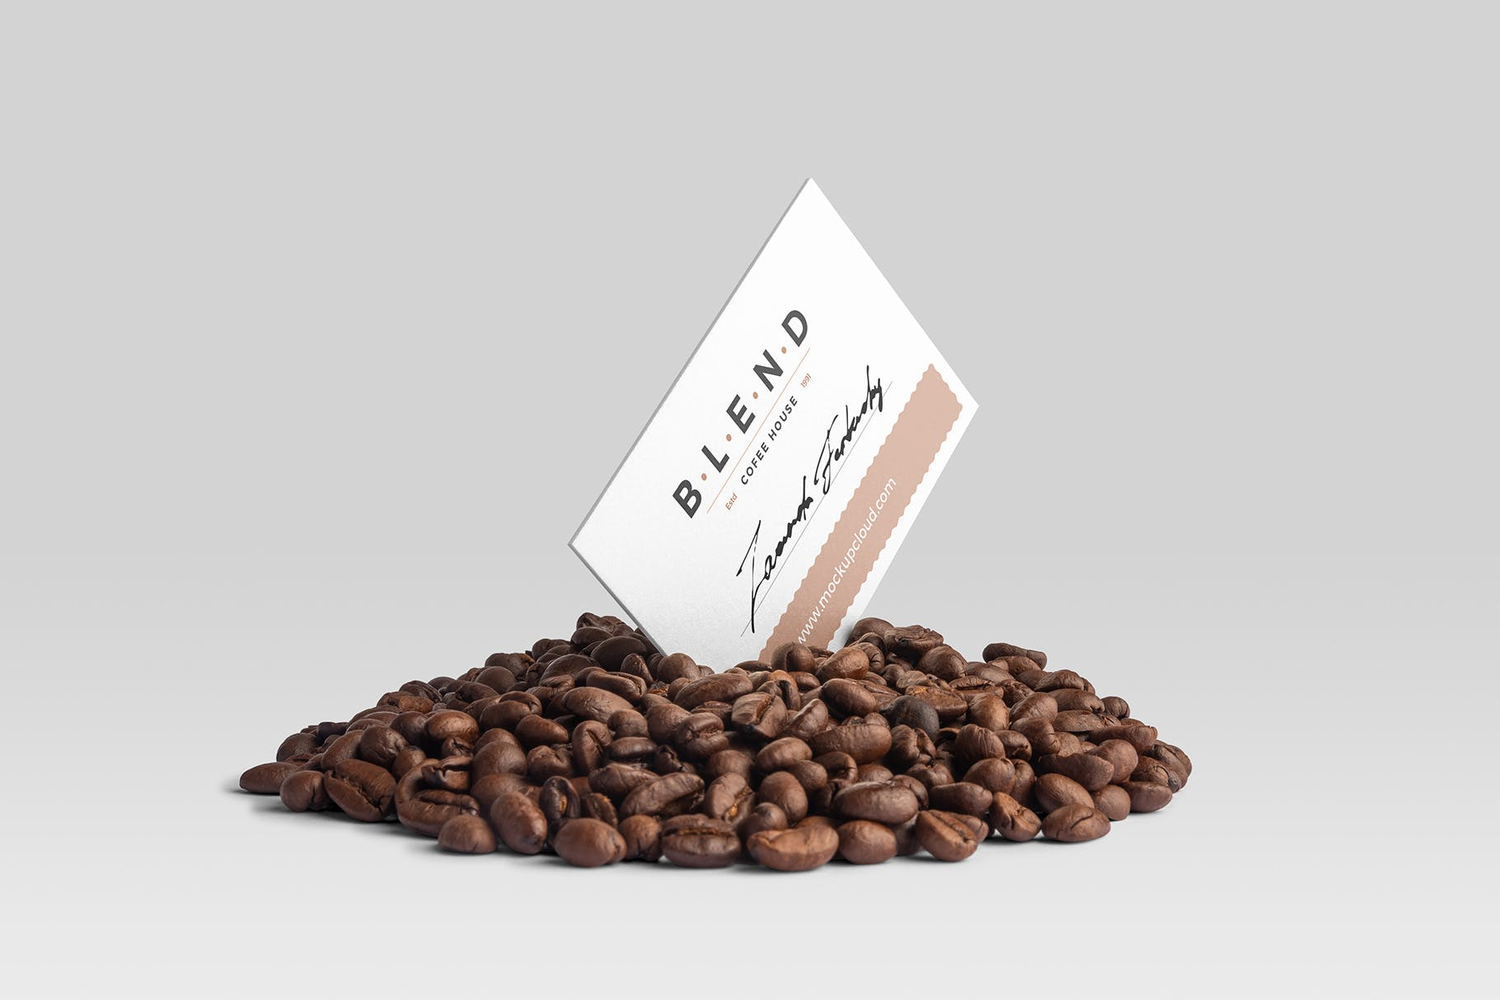 4735 10款咖啡品牌包装VI设计提案PSD样机合集 Blend – Coffeehouse Branding Mockup Vol. 3@GOOODME.COM